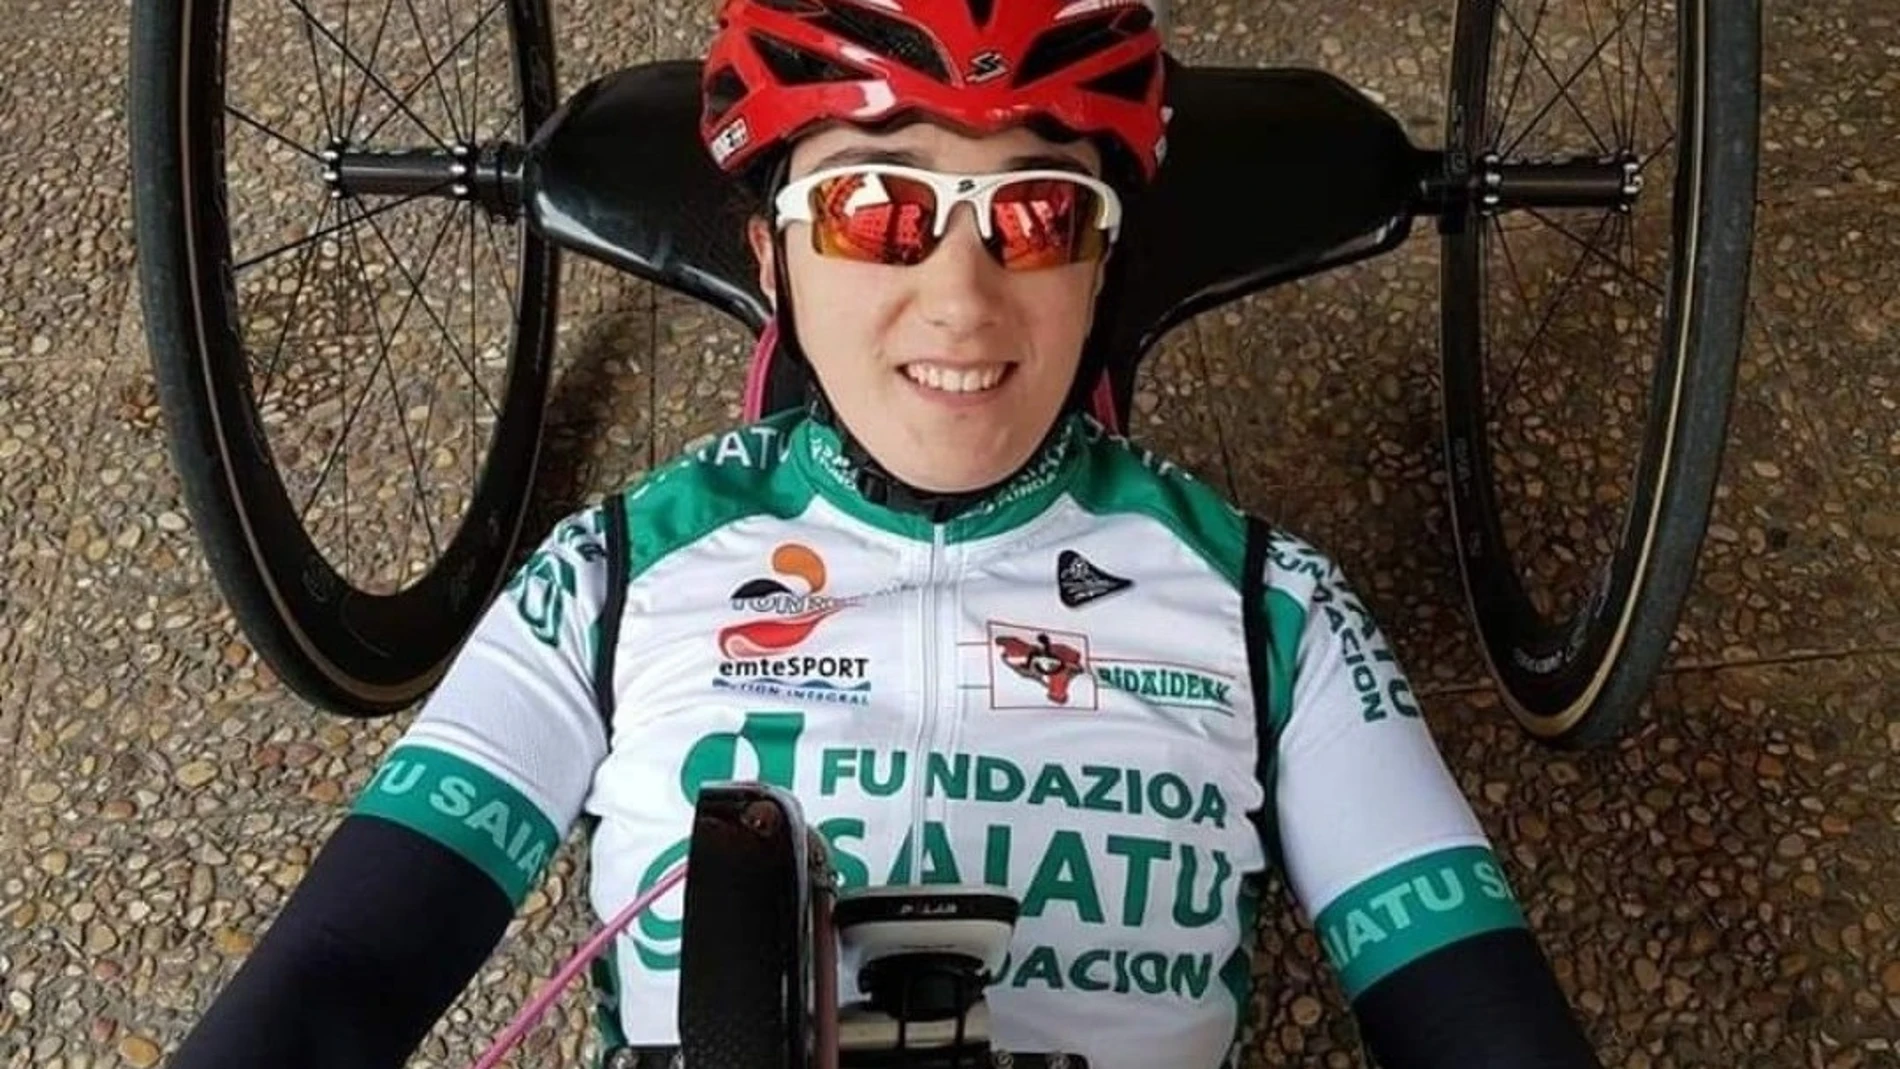 Ciclismo.- La ciclista vasca Ione Basterra fallece con 25 años